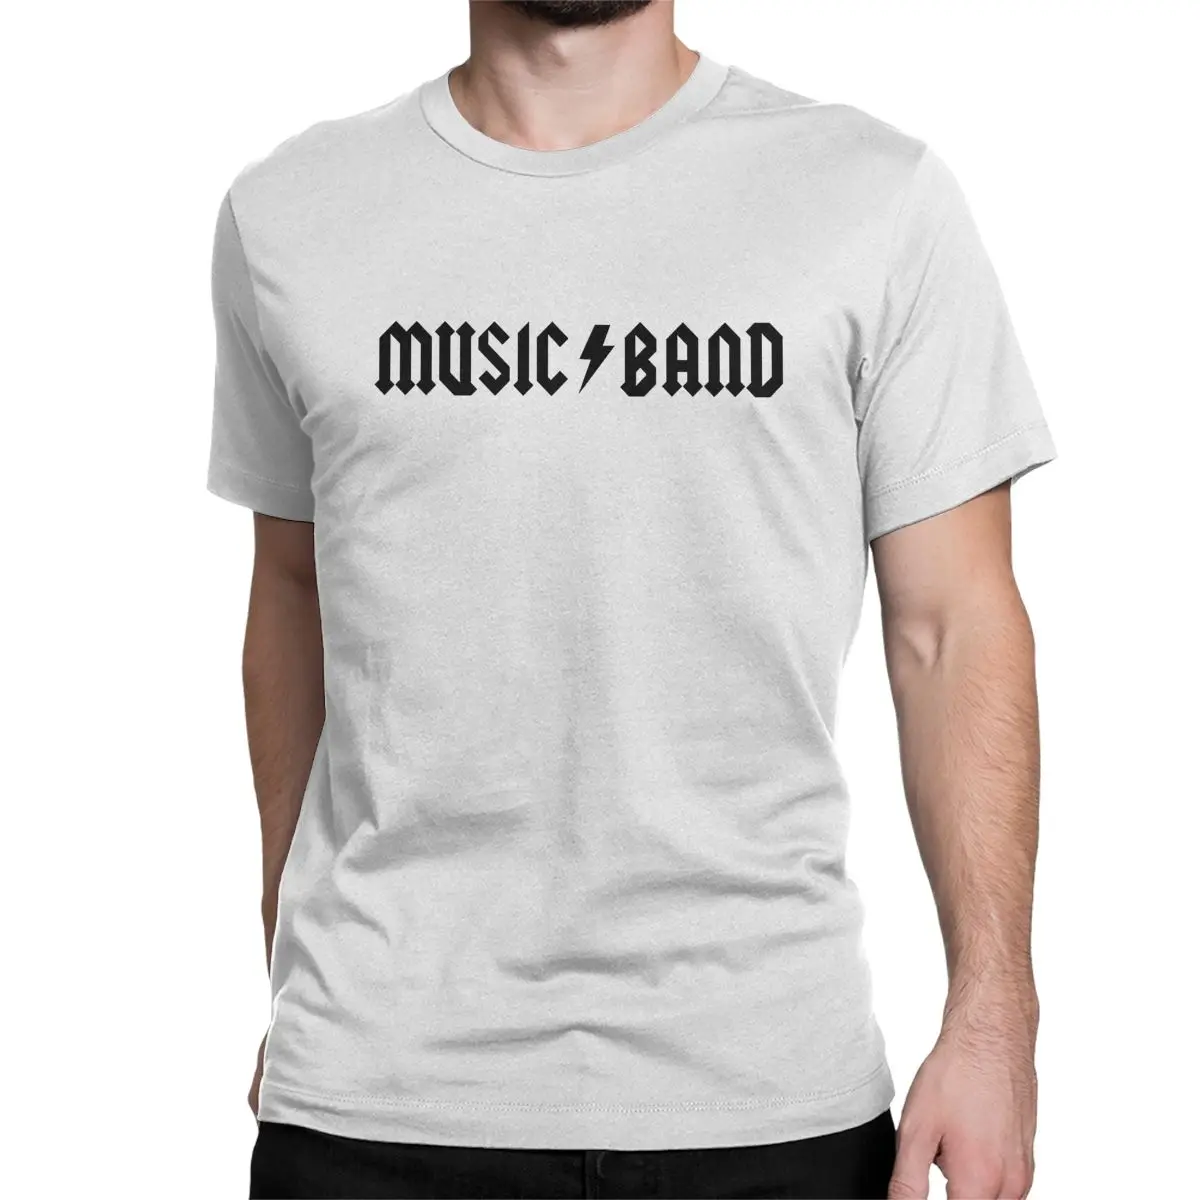 Music Band Steve Buscemi T Shirt for Men T-Shirts How Do You Do Fellow Kids Meme Shirt Short Sleeve Clothes - AliExpress